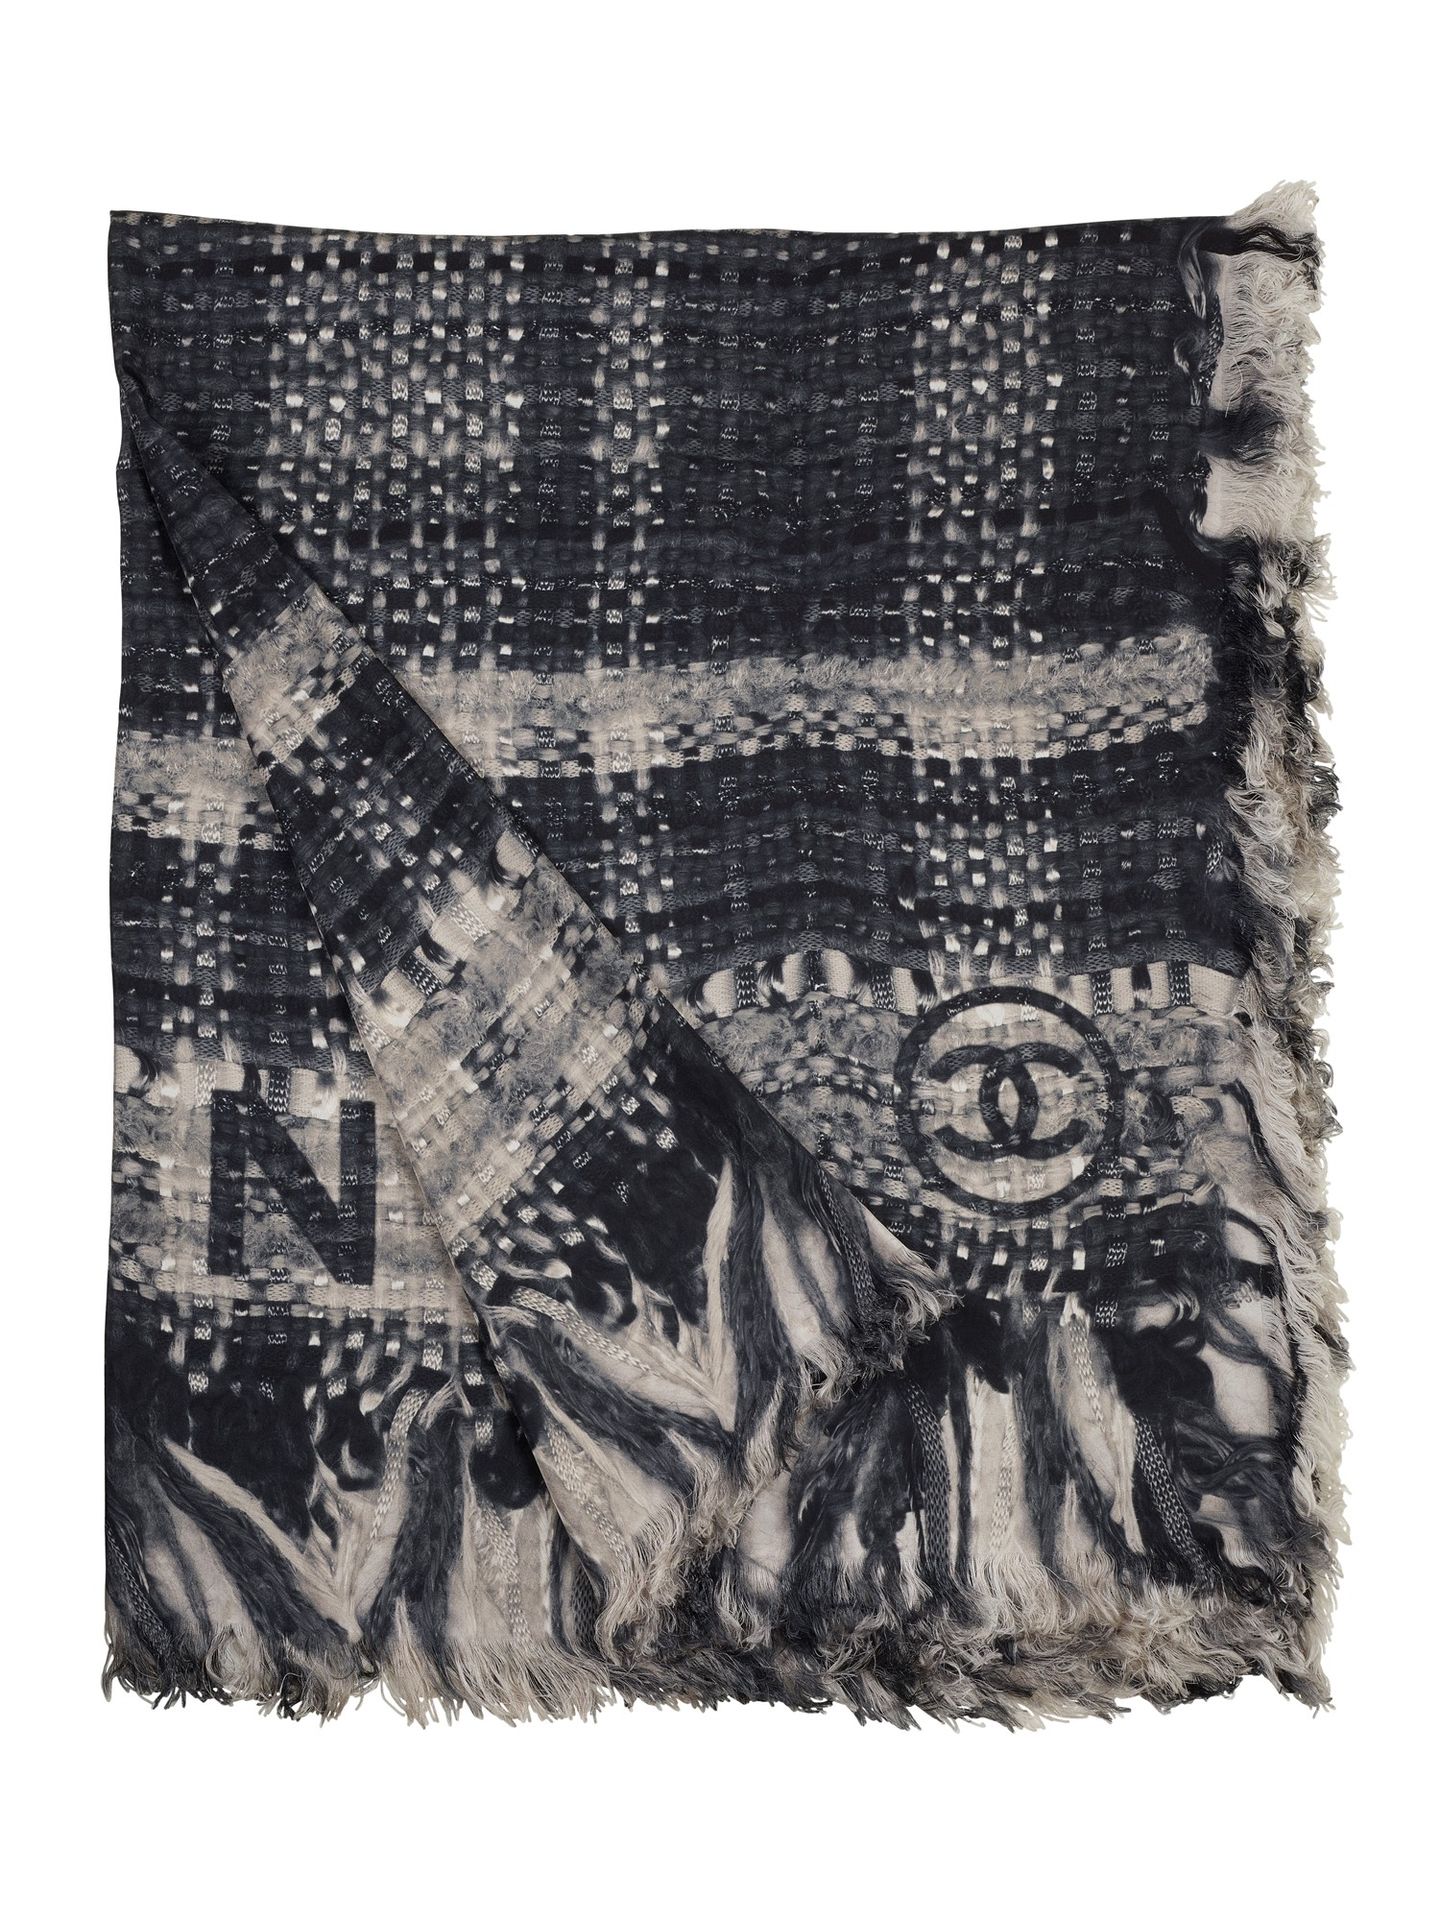 CHANEL Sciarpa Chanel in seta con logo. Ottime condizioni.

Misure 185 x 125 cm
&hellip;